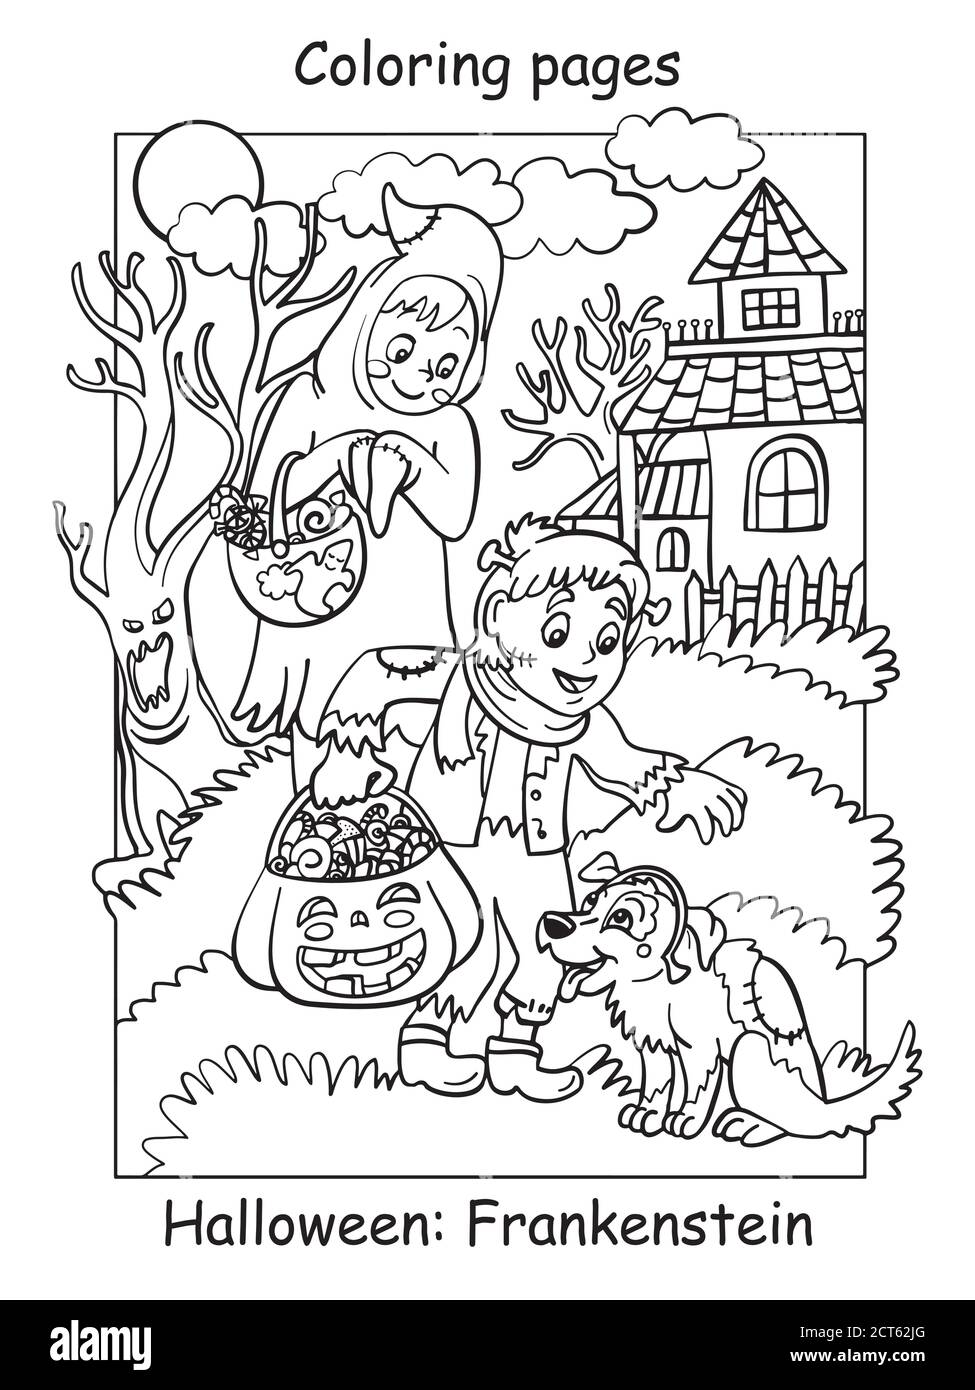 Vektor Malvorlagen Kinder in Kostümen von Geist und frankenstein patzte den Hund. Halloween-Konzept. Cartoon Illustration isoliert auf weiß. Colori Stock Vektor